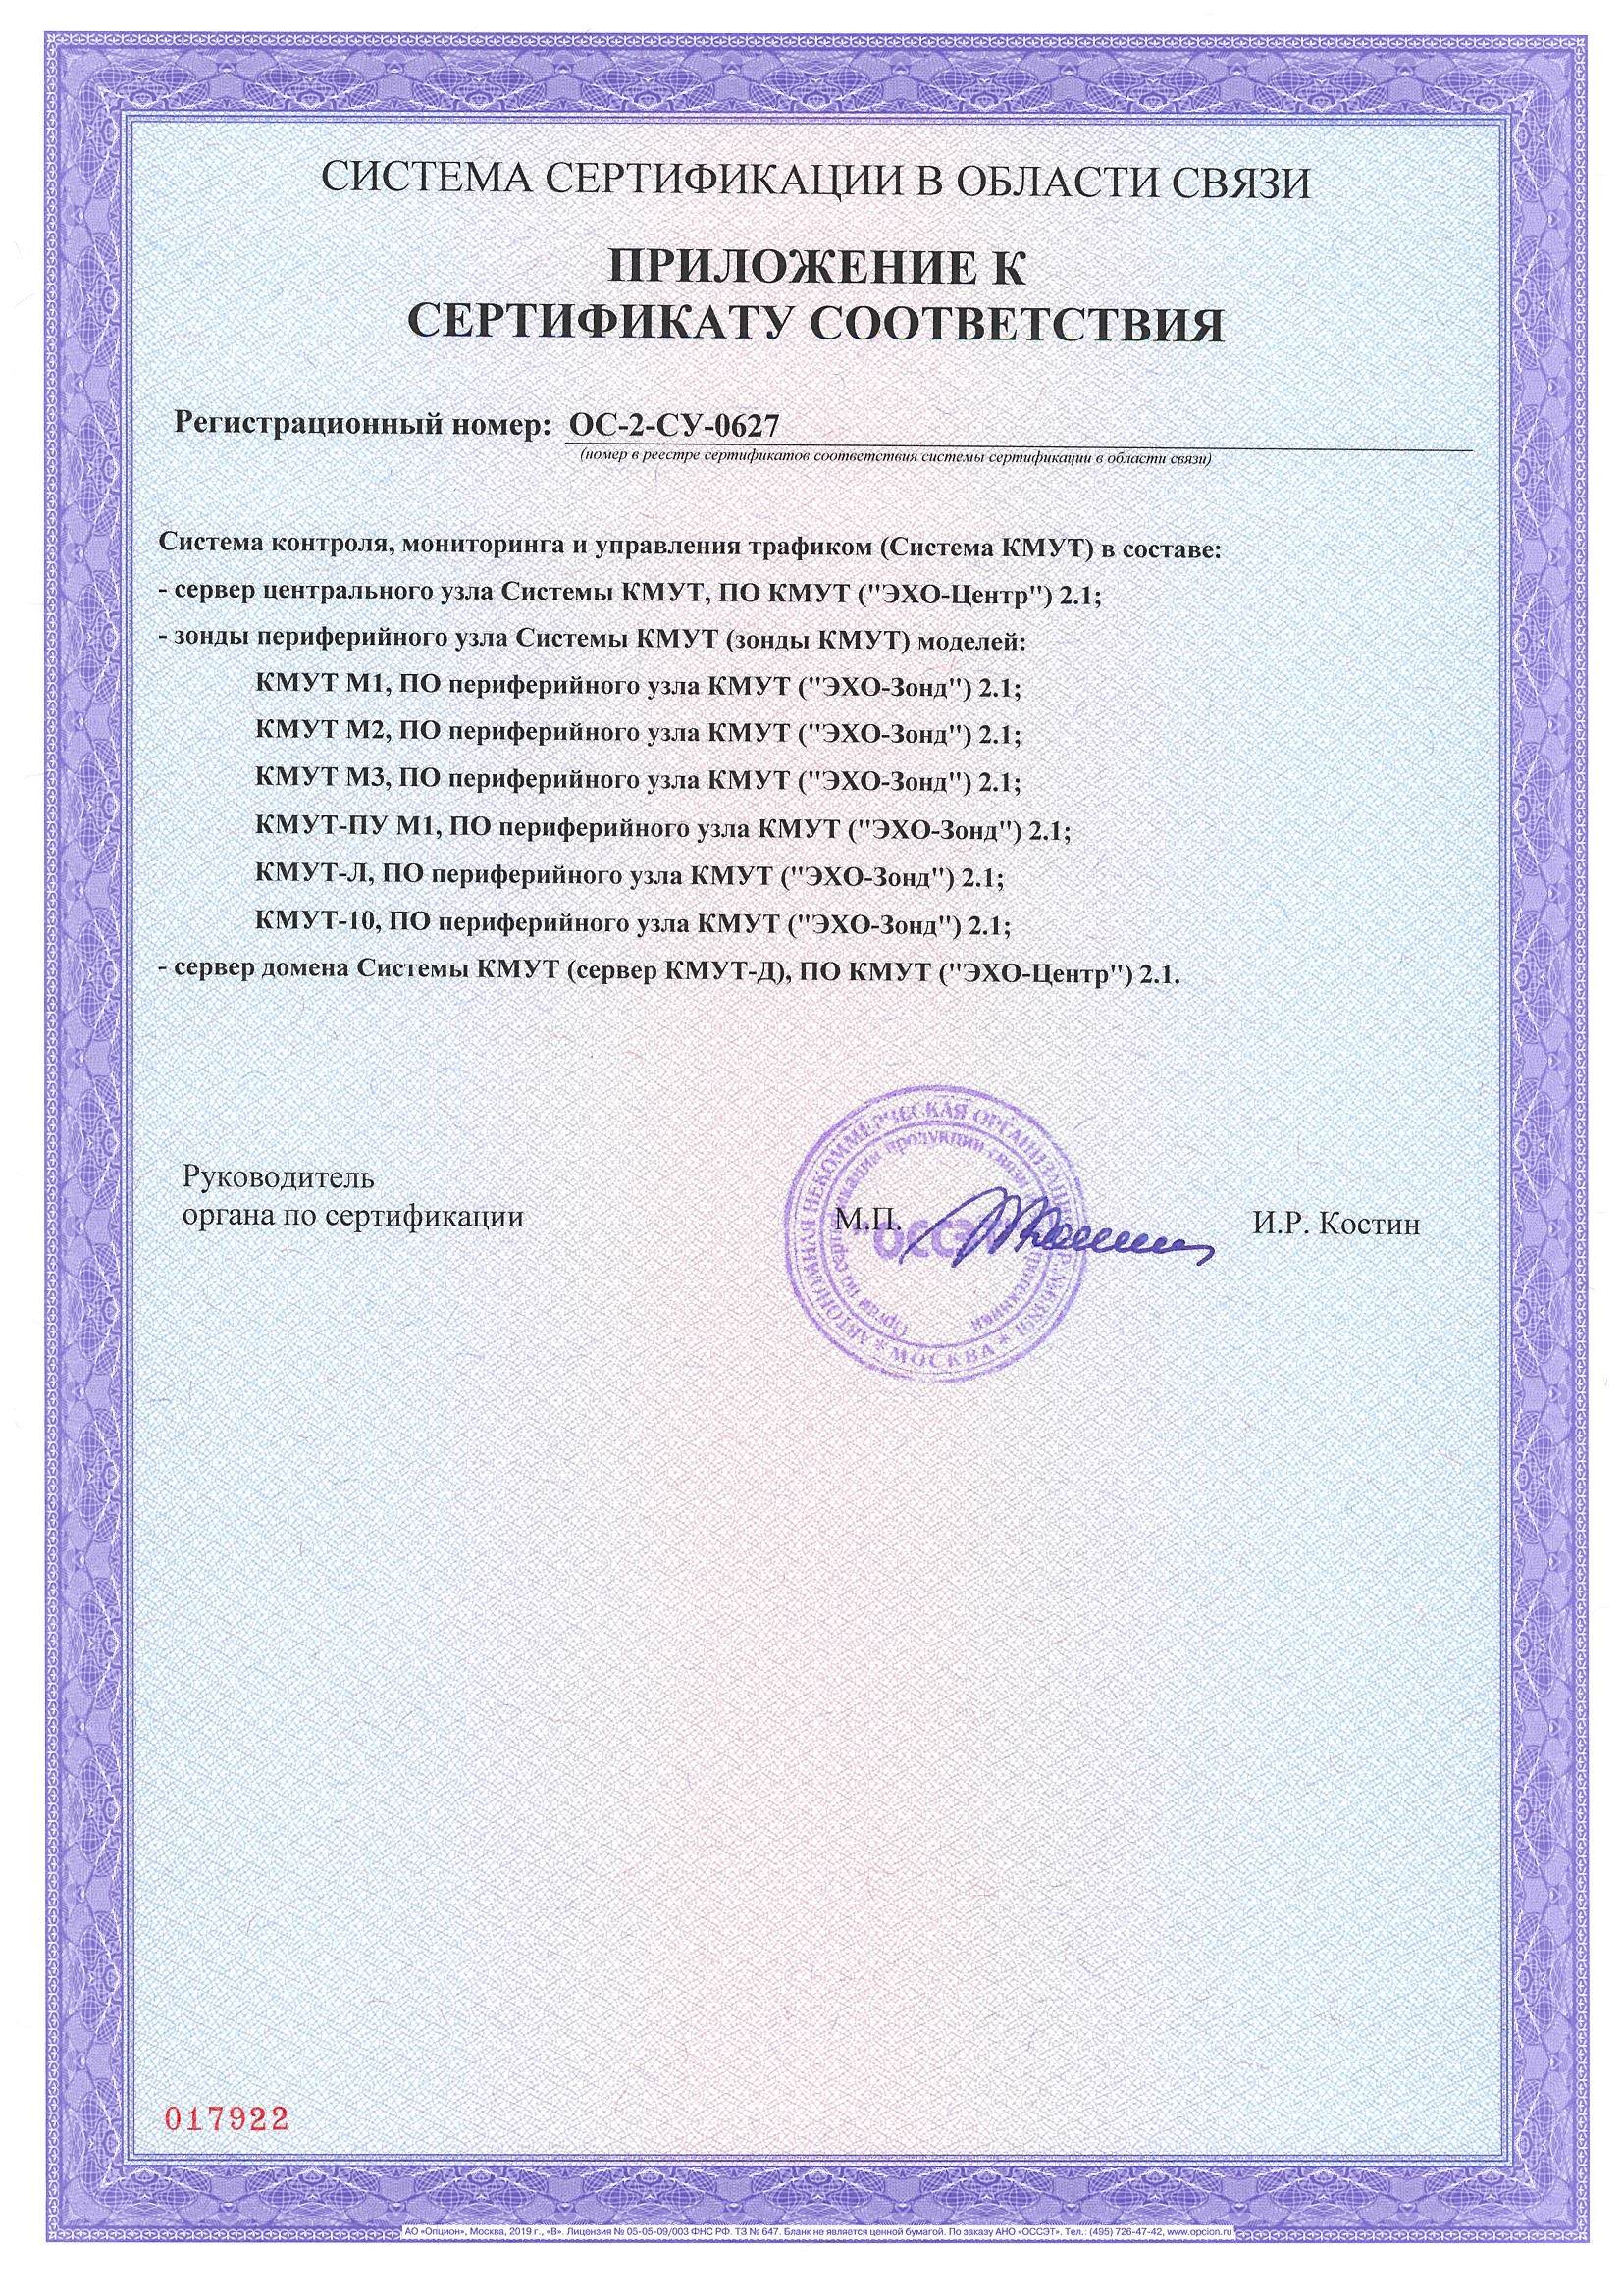 Сертификат соответствия Системы КМУТ ОС-2-СУ-0627